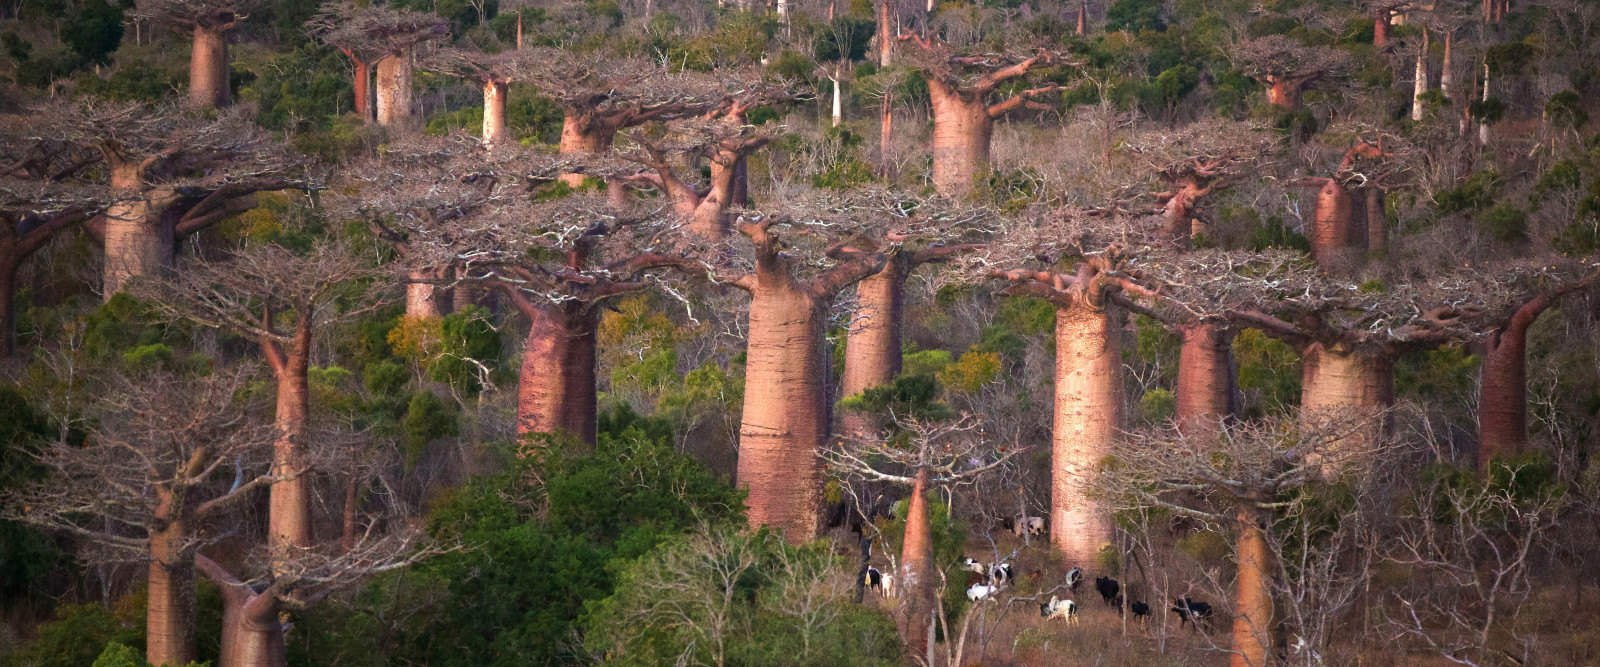 Baobabs entre Terre et Mer